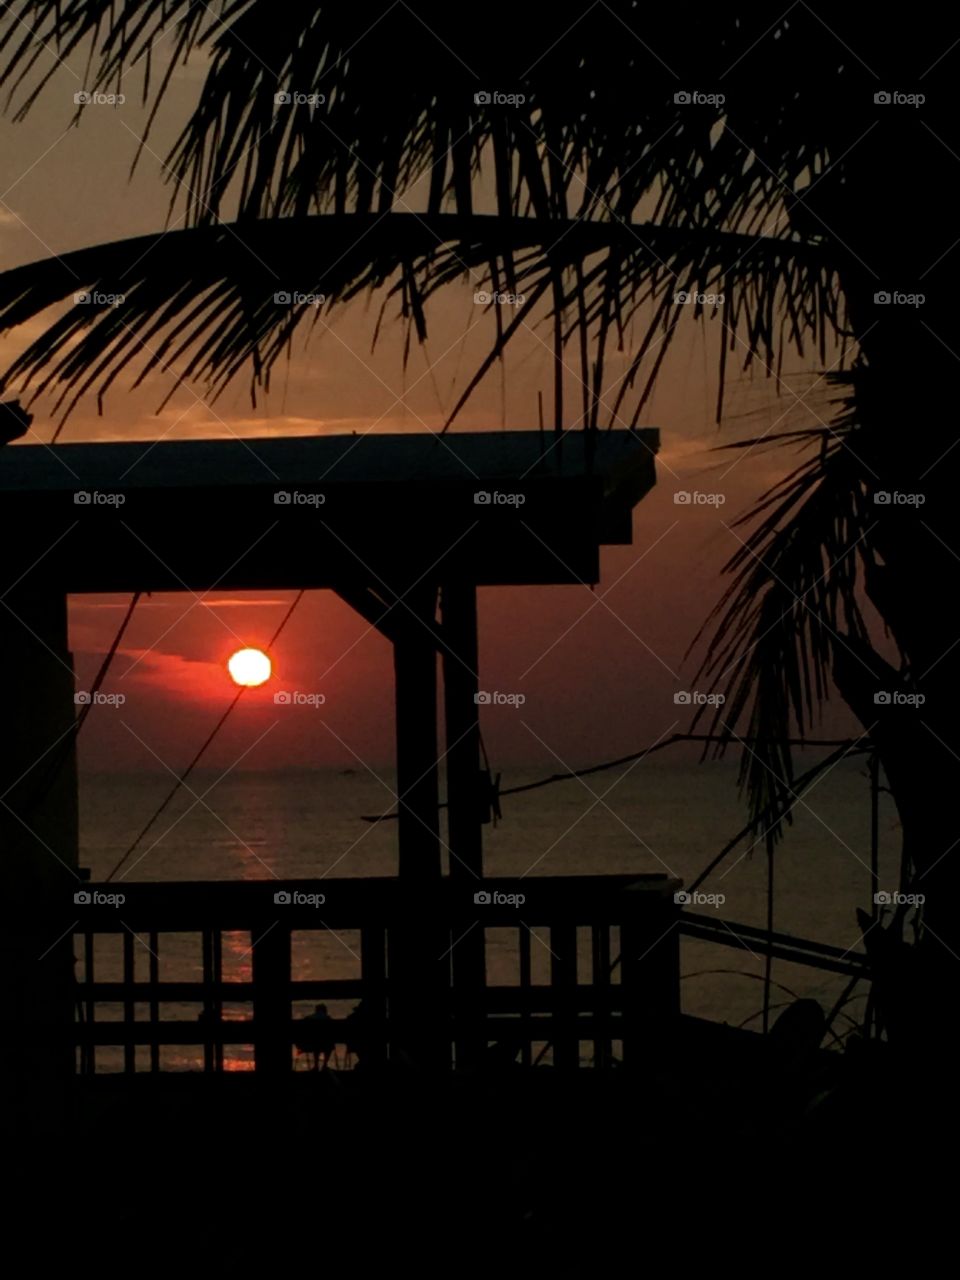 Sunrise at Oceanridge Florida 